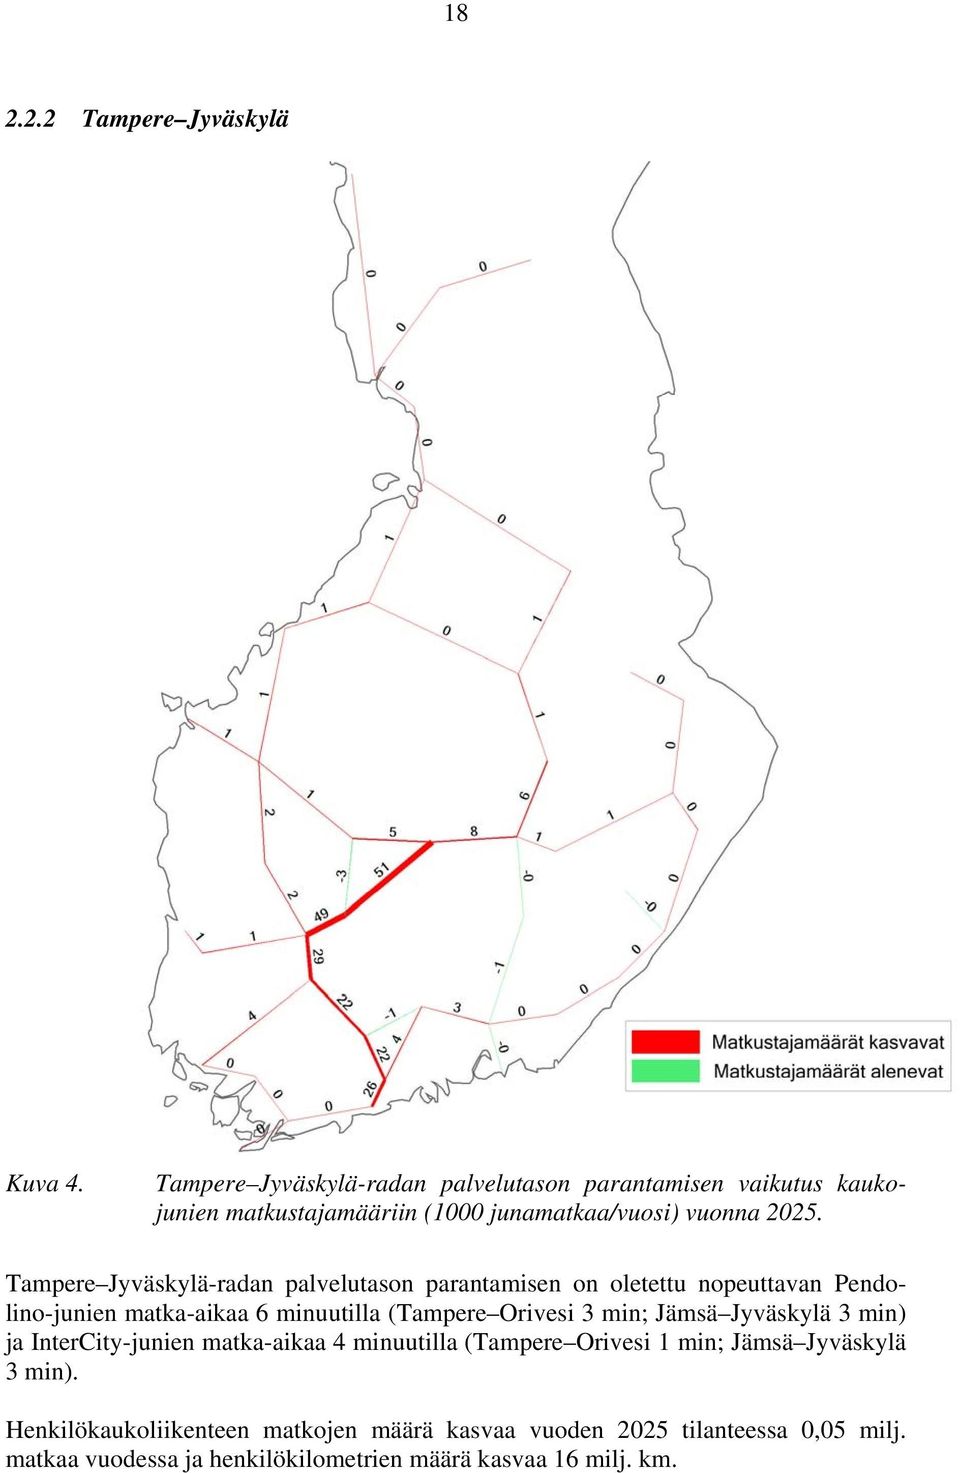 Tampere Jyväskylä-radan palvelutason parantamisen on oletettu nopeuttavan Pendolino-junien matka-aikaa 6 minuutilla (Tampere Orivesi 3 min;